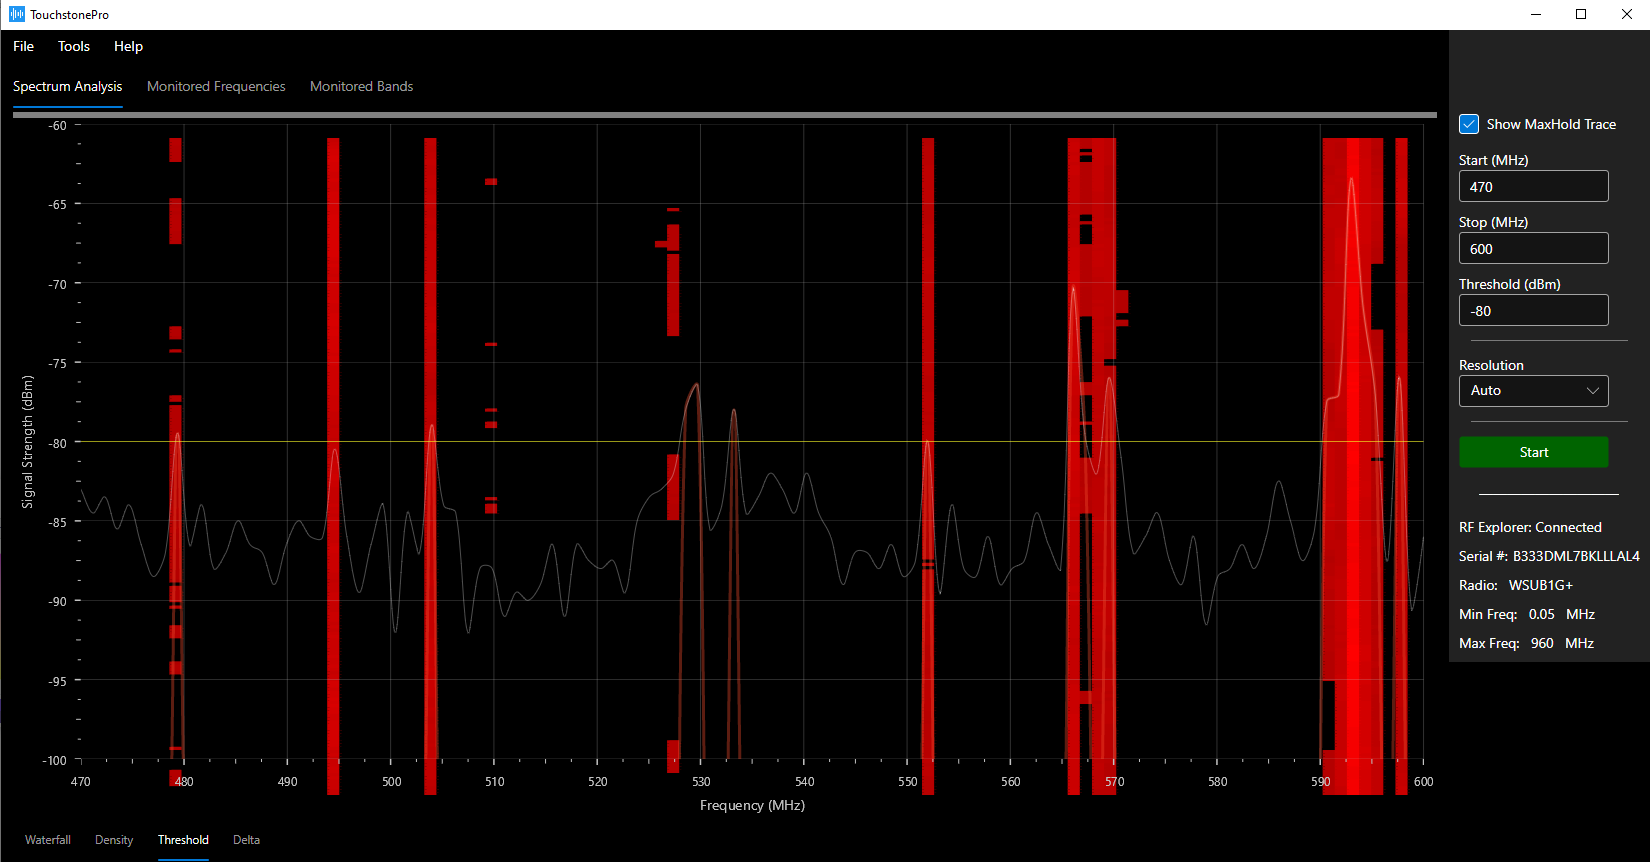 Touchstone RF spectrum analyzer software -- Threshold trace view